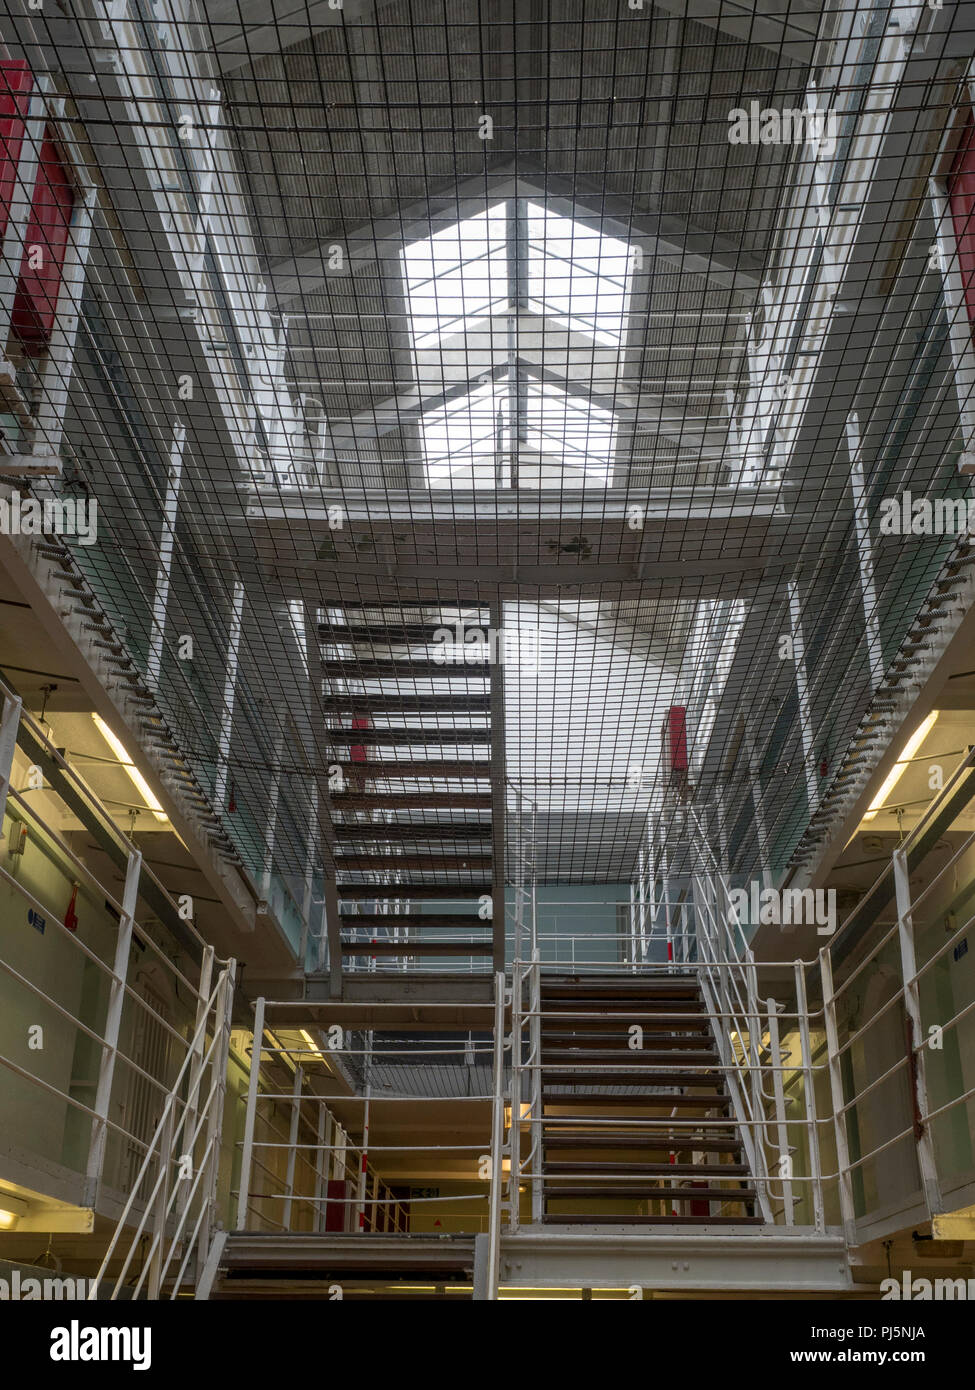 Ebenen und Zellen in Peterhead Gefängnis, Schottland. Ursprünglich im Jahre 1888 eröffnet, das Gefängnis geschlossen in 2013 und ist heute als Museum erhalten. Stockfoto